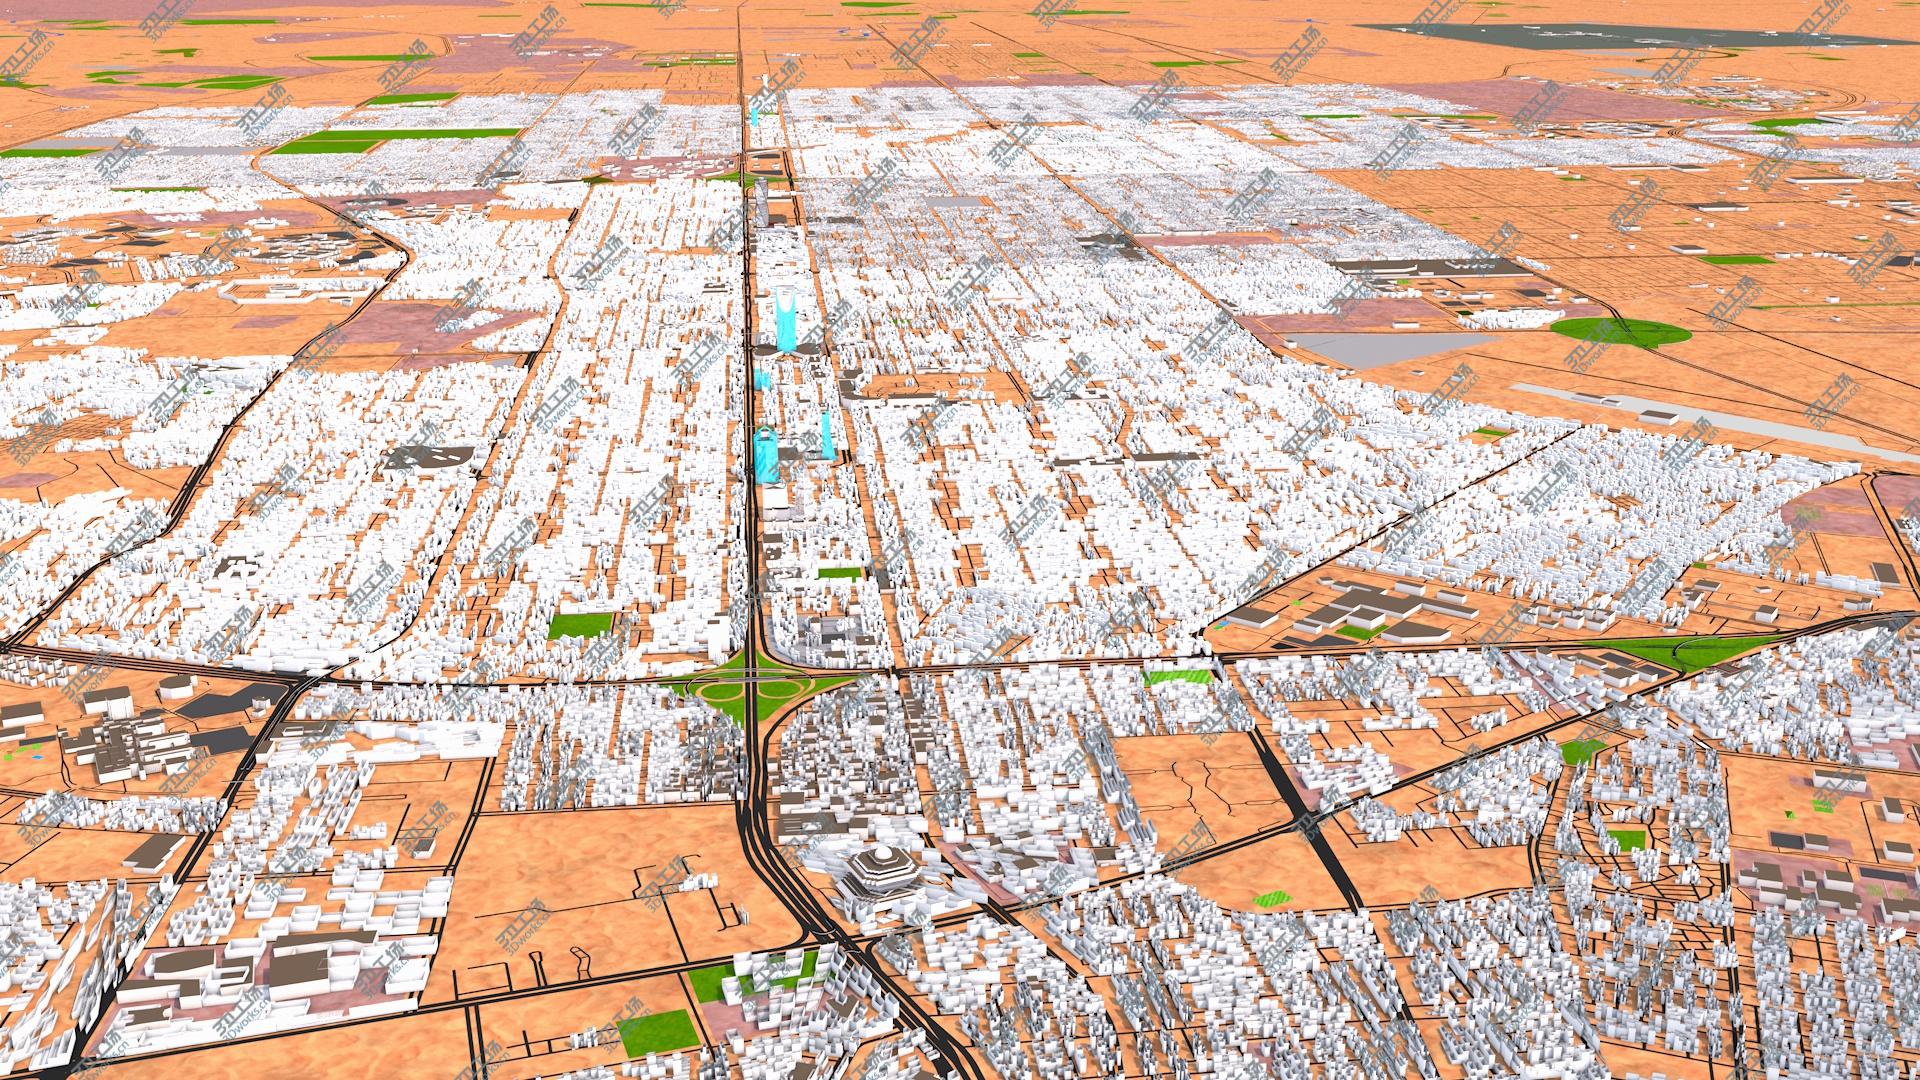 images/goods_img/20210113/Riyadh City Sep 2020 3d model 3D/3.jpg